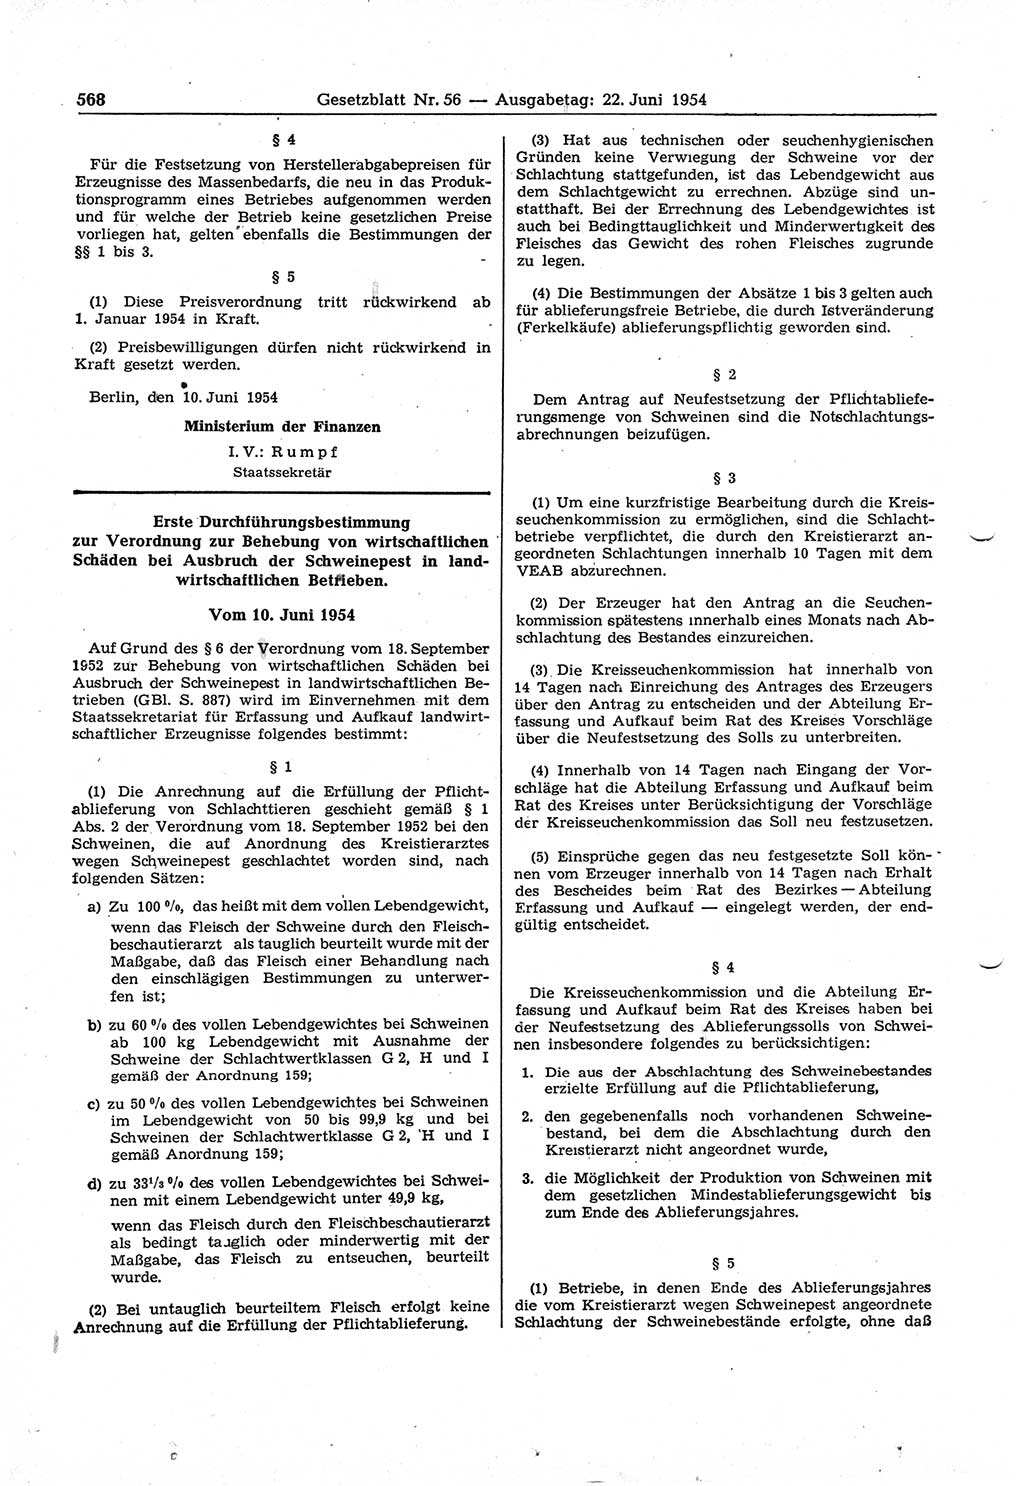 Gesetzblatt (GBl.) der Deutschen Demokratischen Republik (DDR) 1954, Seite 568 (GBl. DDR 1954, S. 568)